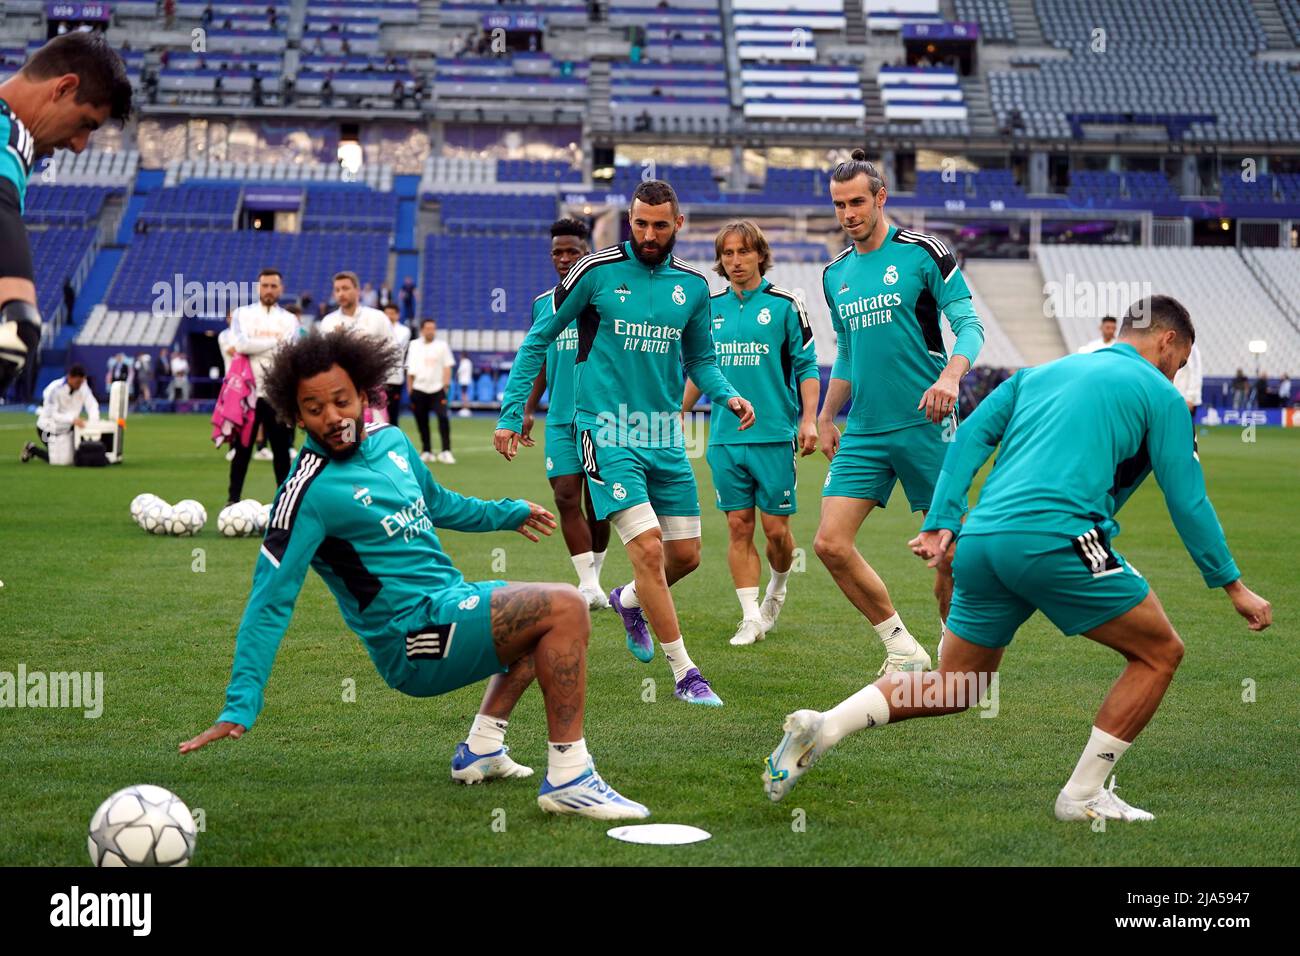 Karim Benzema und Gareth Bale von Real Madrid während einer Trainingseinheit im Stade de France vor dem UEFA Champions League-Finale am Samstag in Paris. Bilddatum: Freitag, 27. Mai 2022. Stockfoto